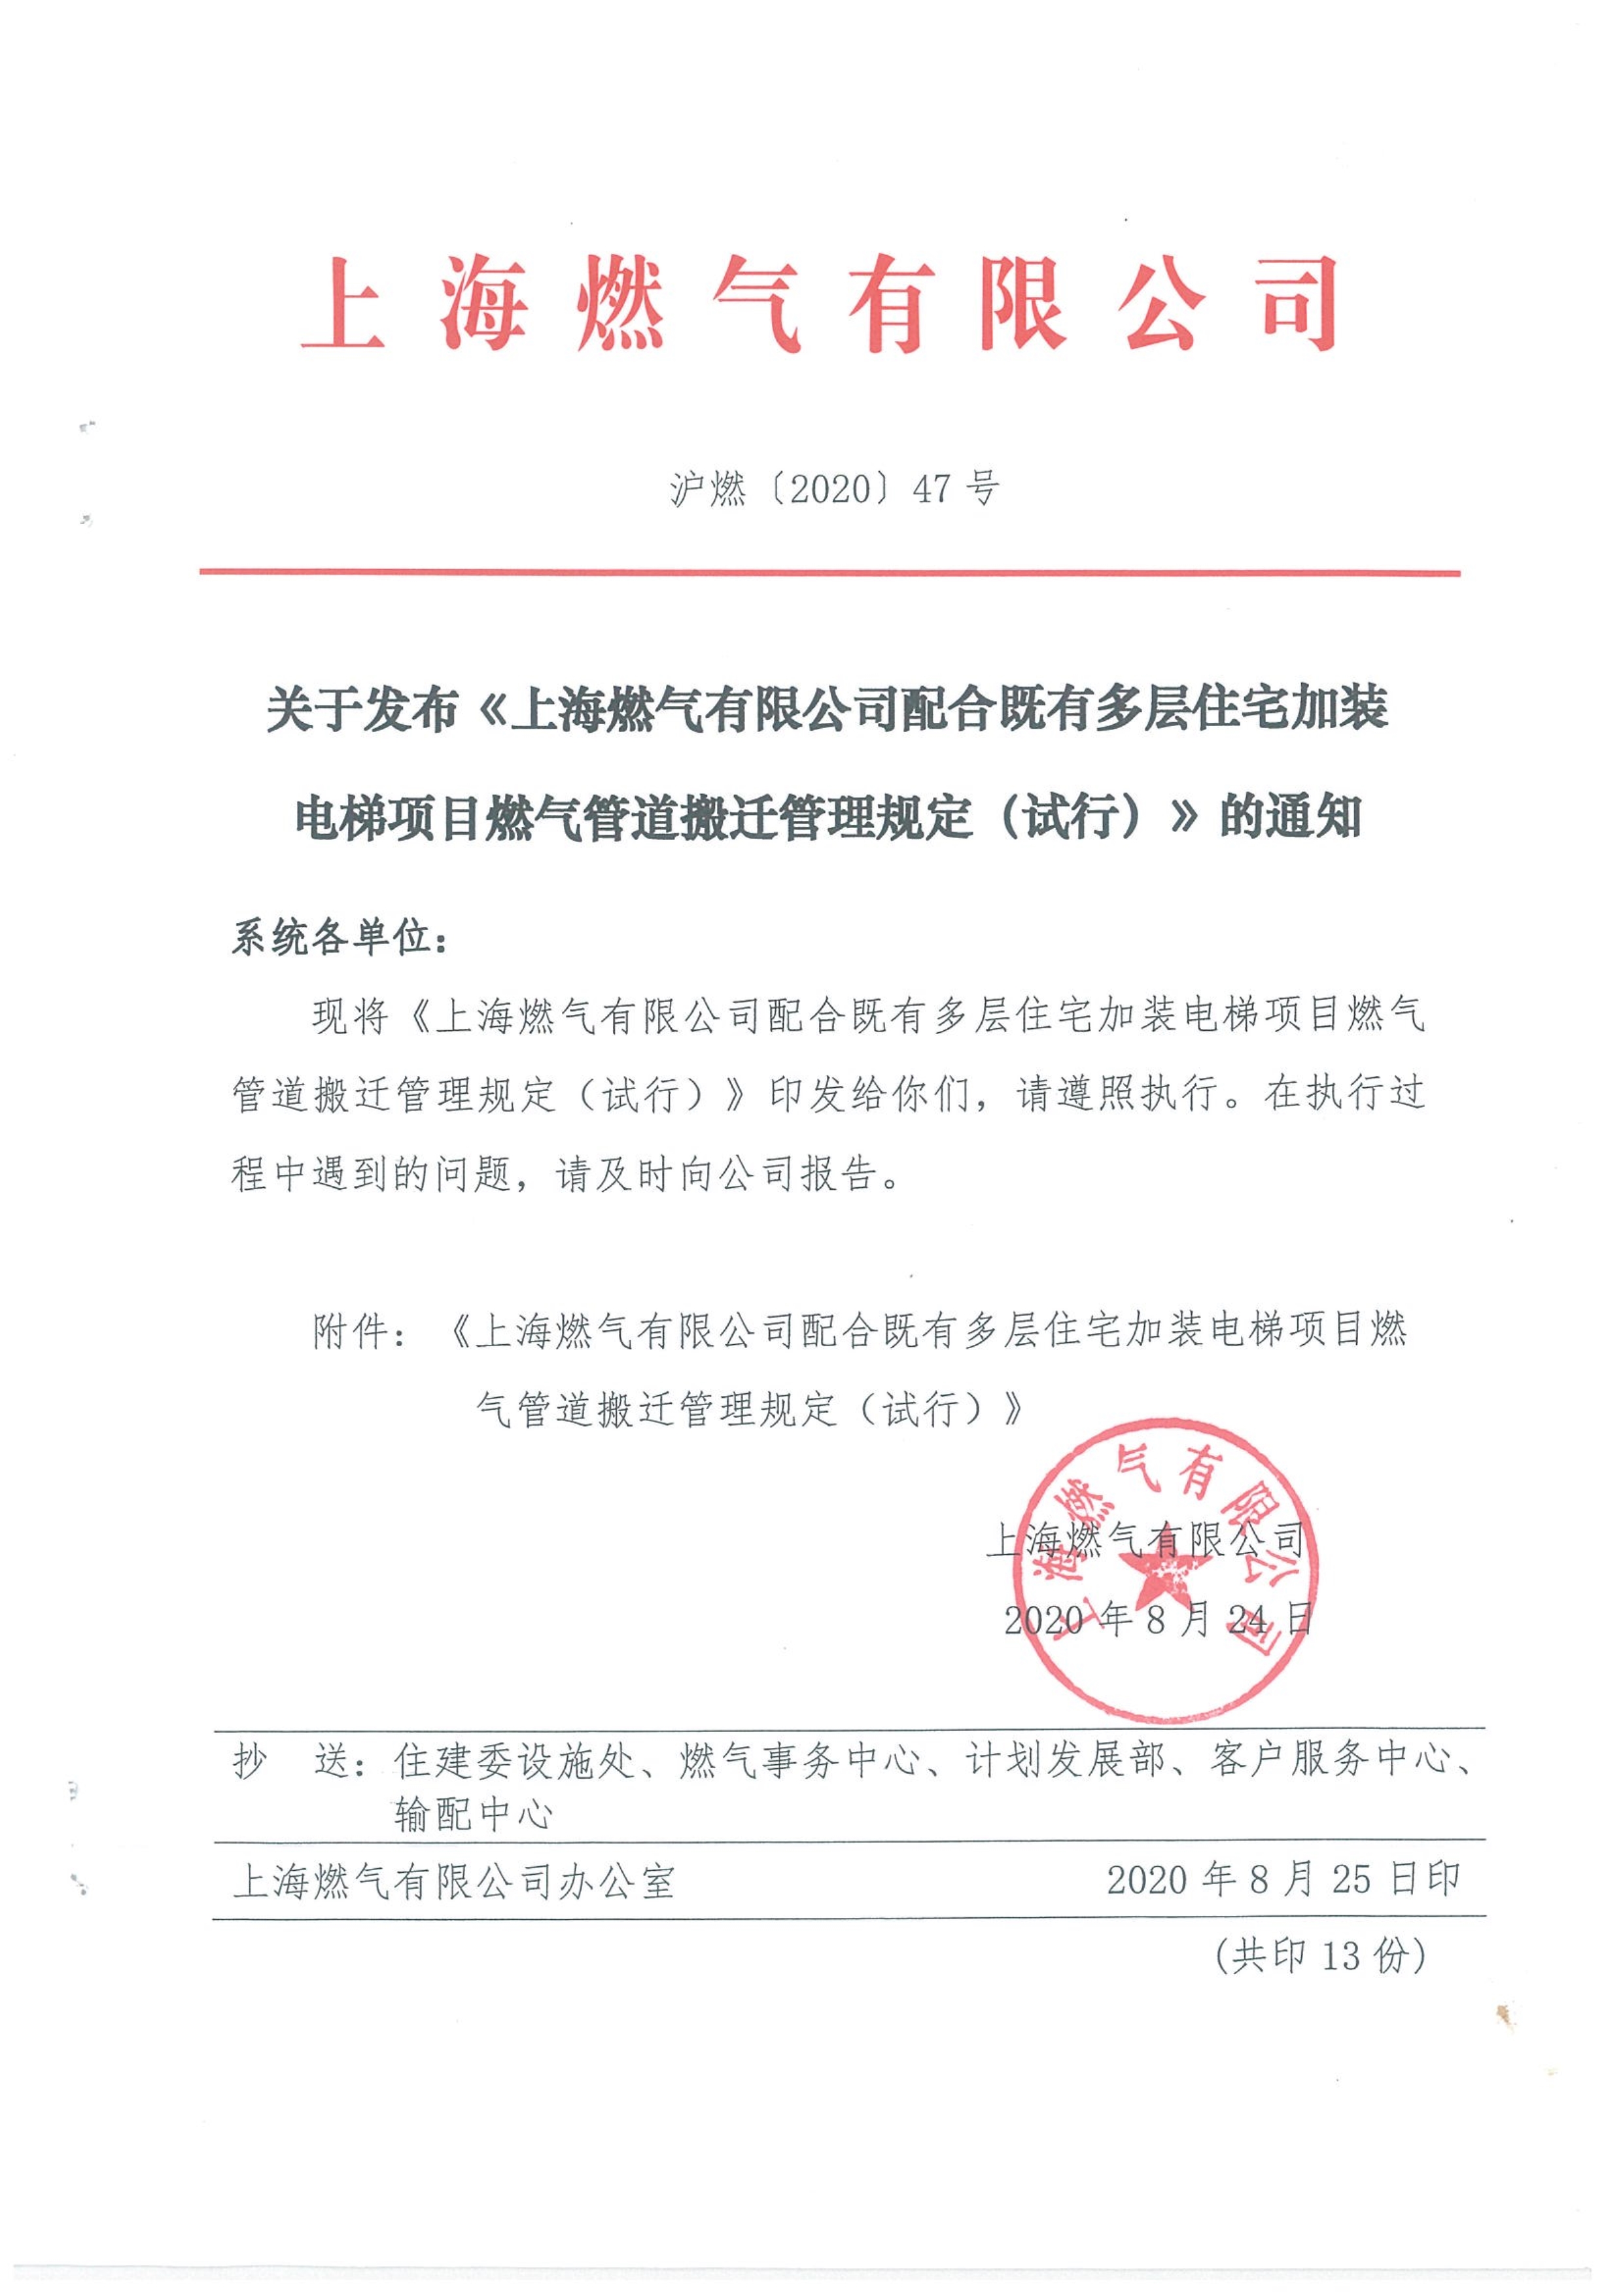 沪燃（2020）47号 关于发布《上海燃气有限公司配合既有多层住宅加装电梯项目燃气管道搬迁管理规定（试行）》的通知-市住建委(1)_1.jpg